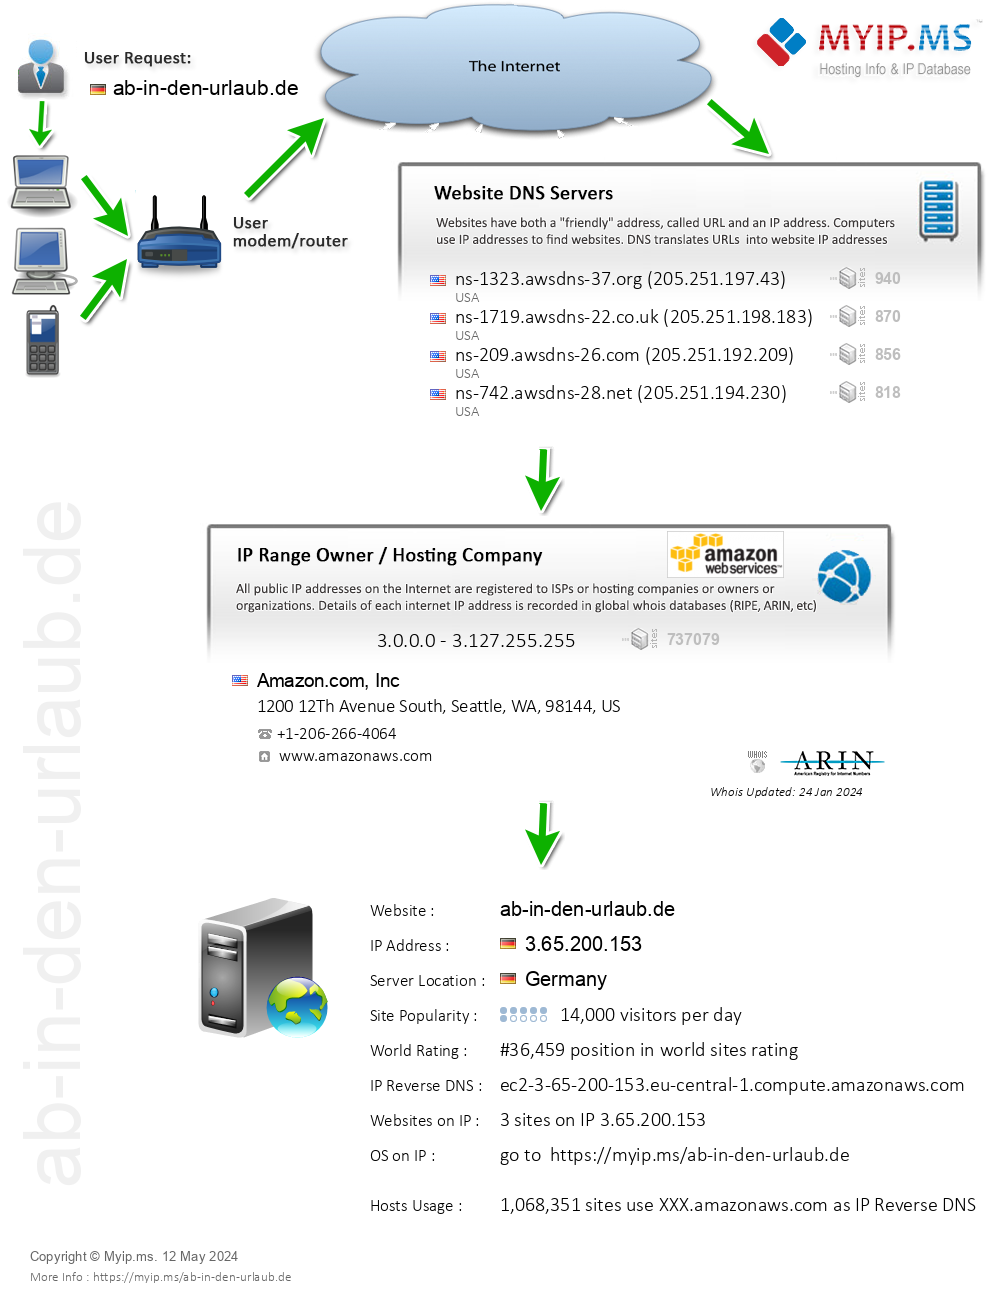 Ab-in-den-urlaub.de - Website Hosting Visual IP Diagram